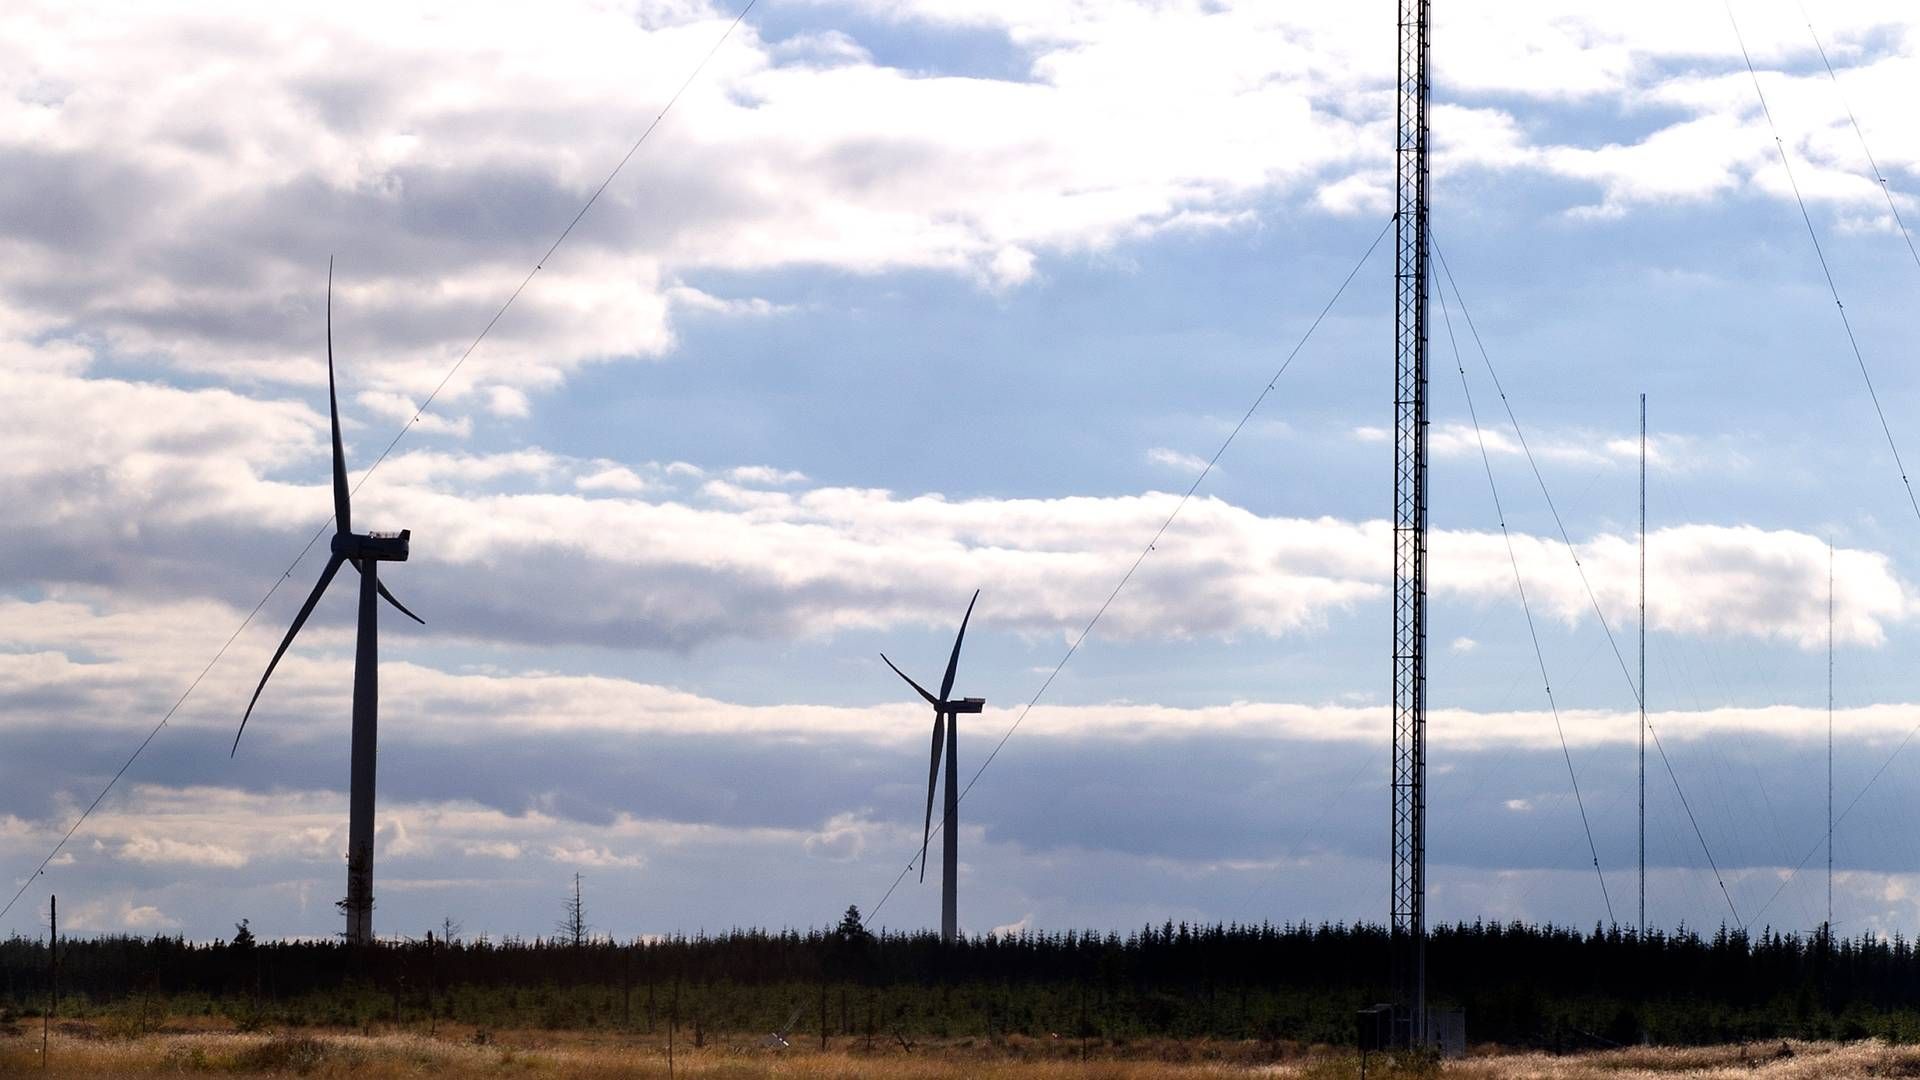 Danmark har to nationale testcentre for store vindmøller ved henholdsvis Østerild og Høvsøre. | Foto: Carsten Andreasen